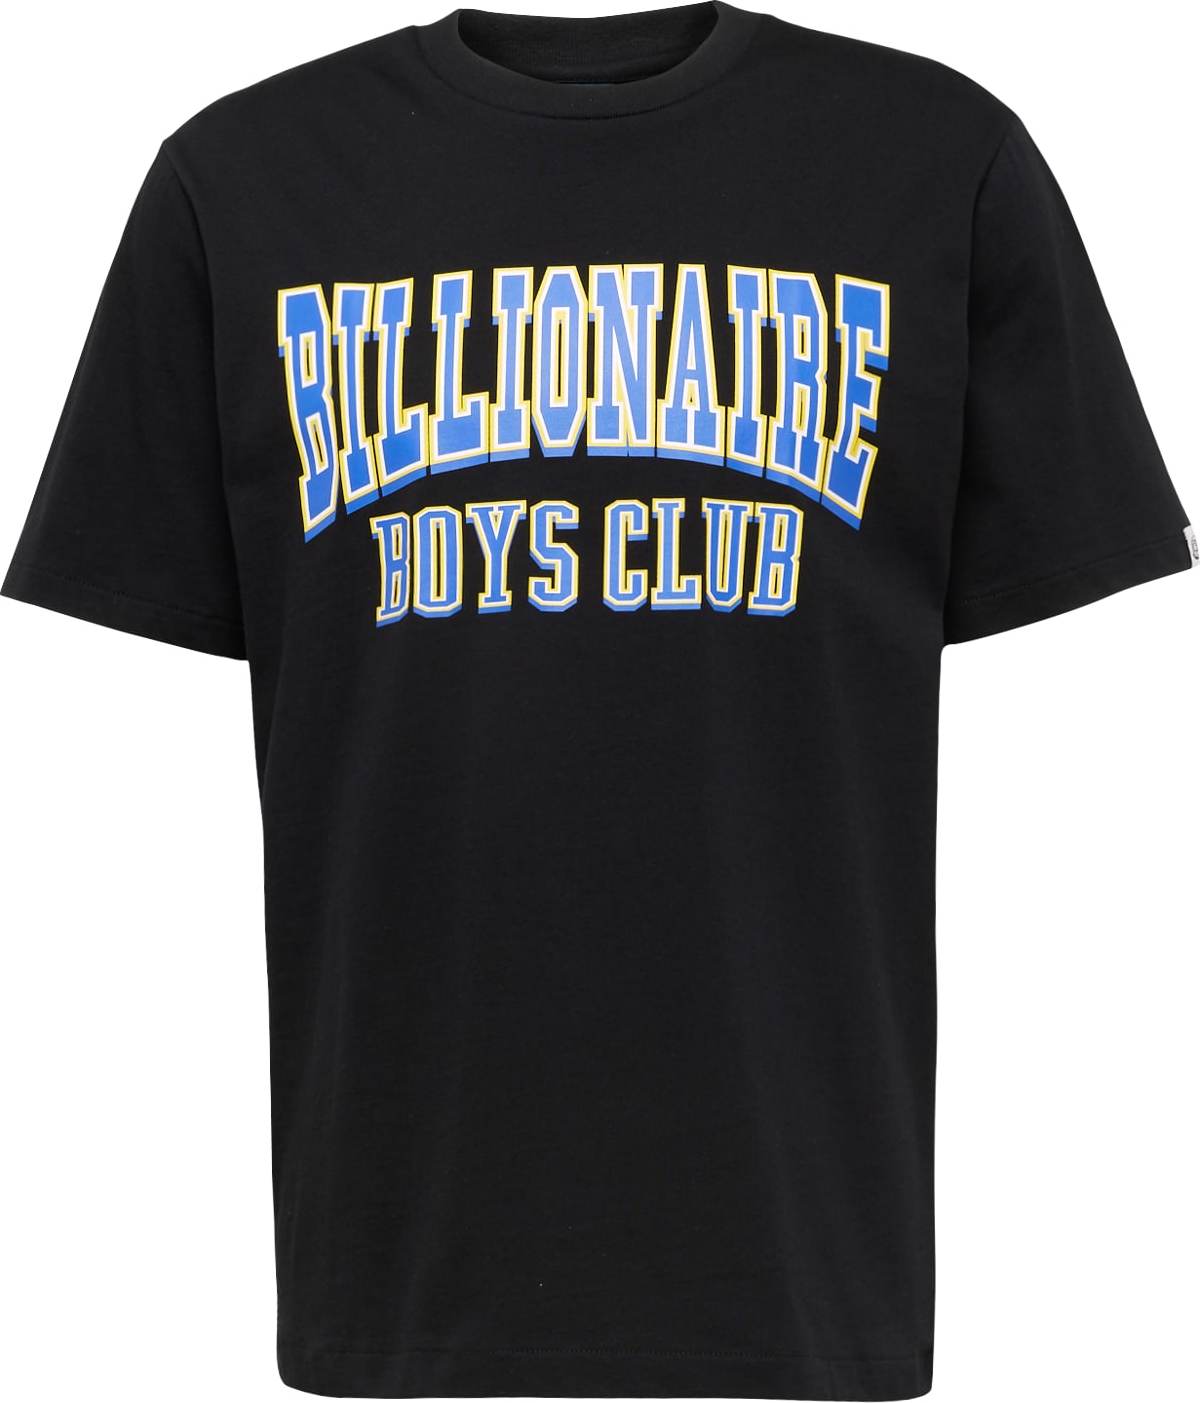 Tričko Billionaire Boys Club modrá / žlutá / černá